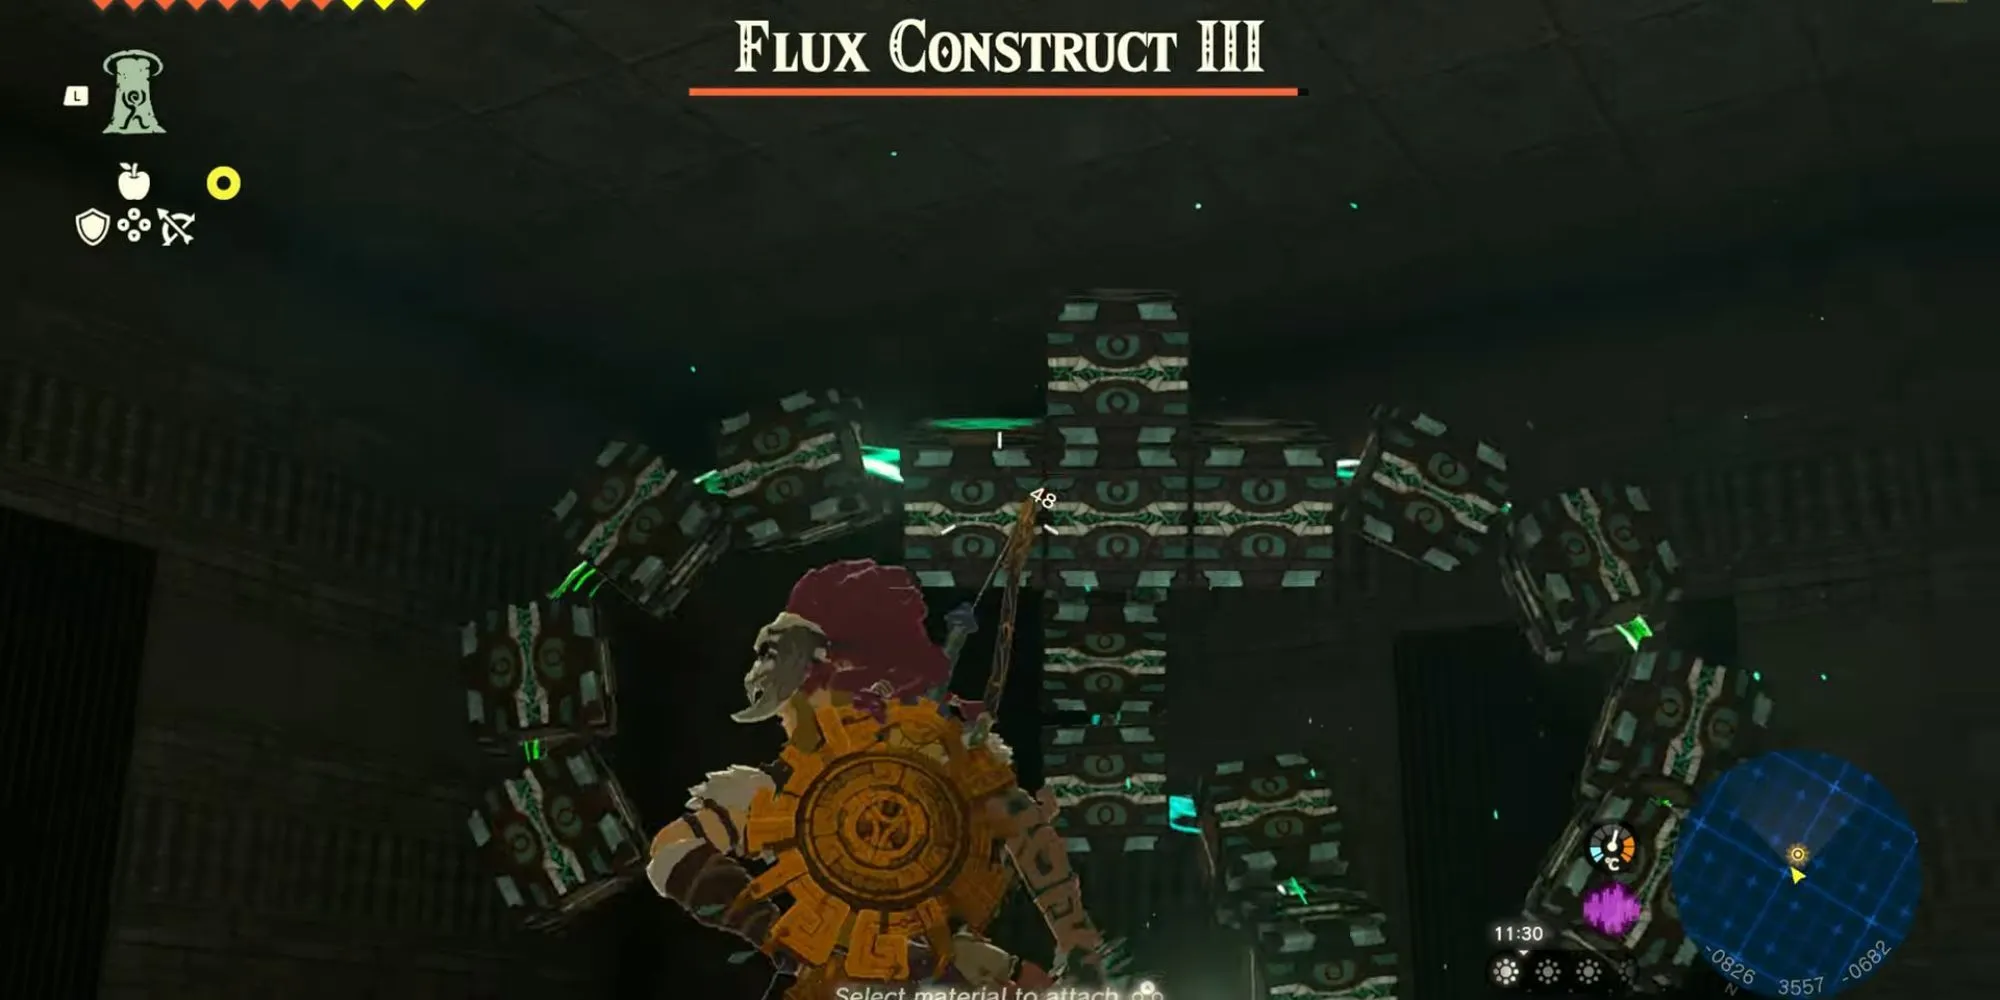 Legend of Zelda łzy królestwa Labirynt Flux Construct III